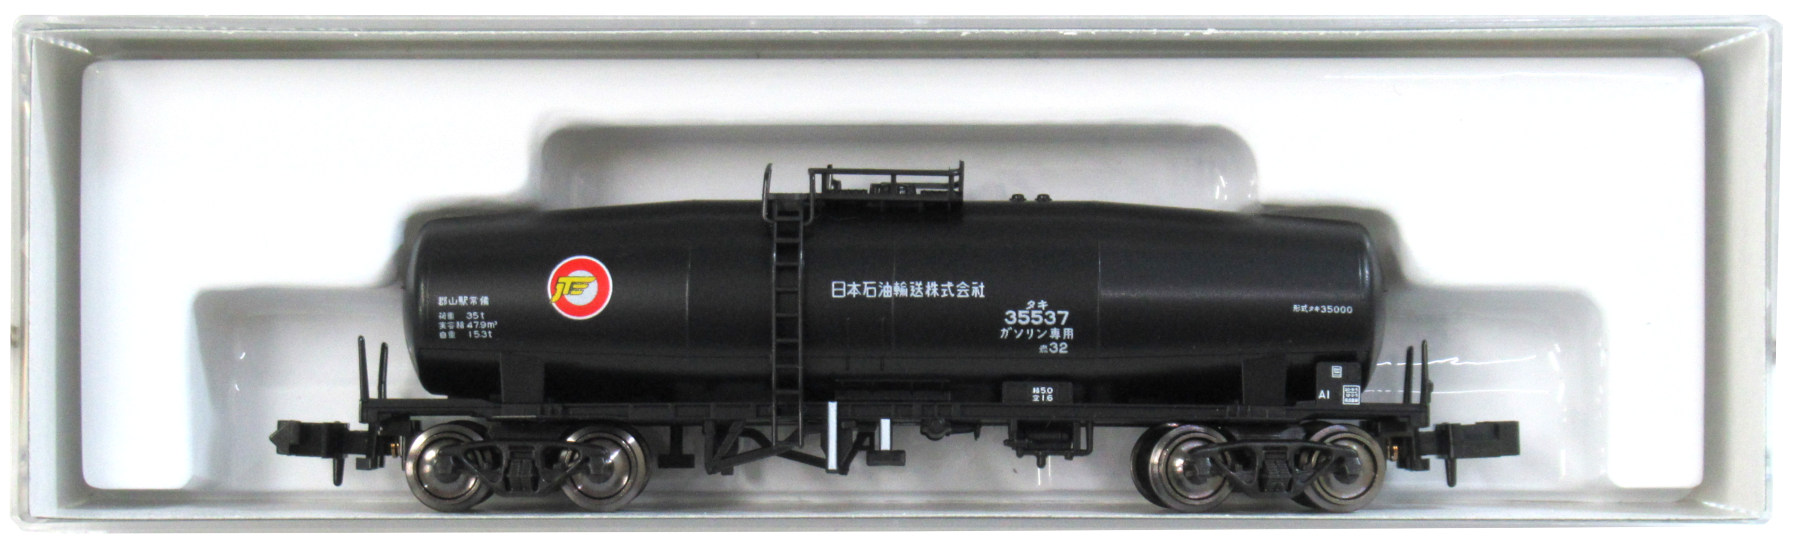 公式 鉄道模型 8050 1タキ 日本石油輸送色 商品詳細 Kato カトー ホビーランドぽち